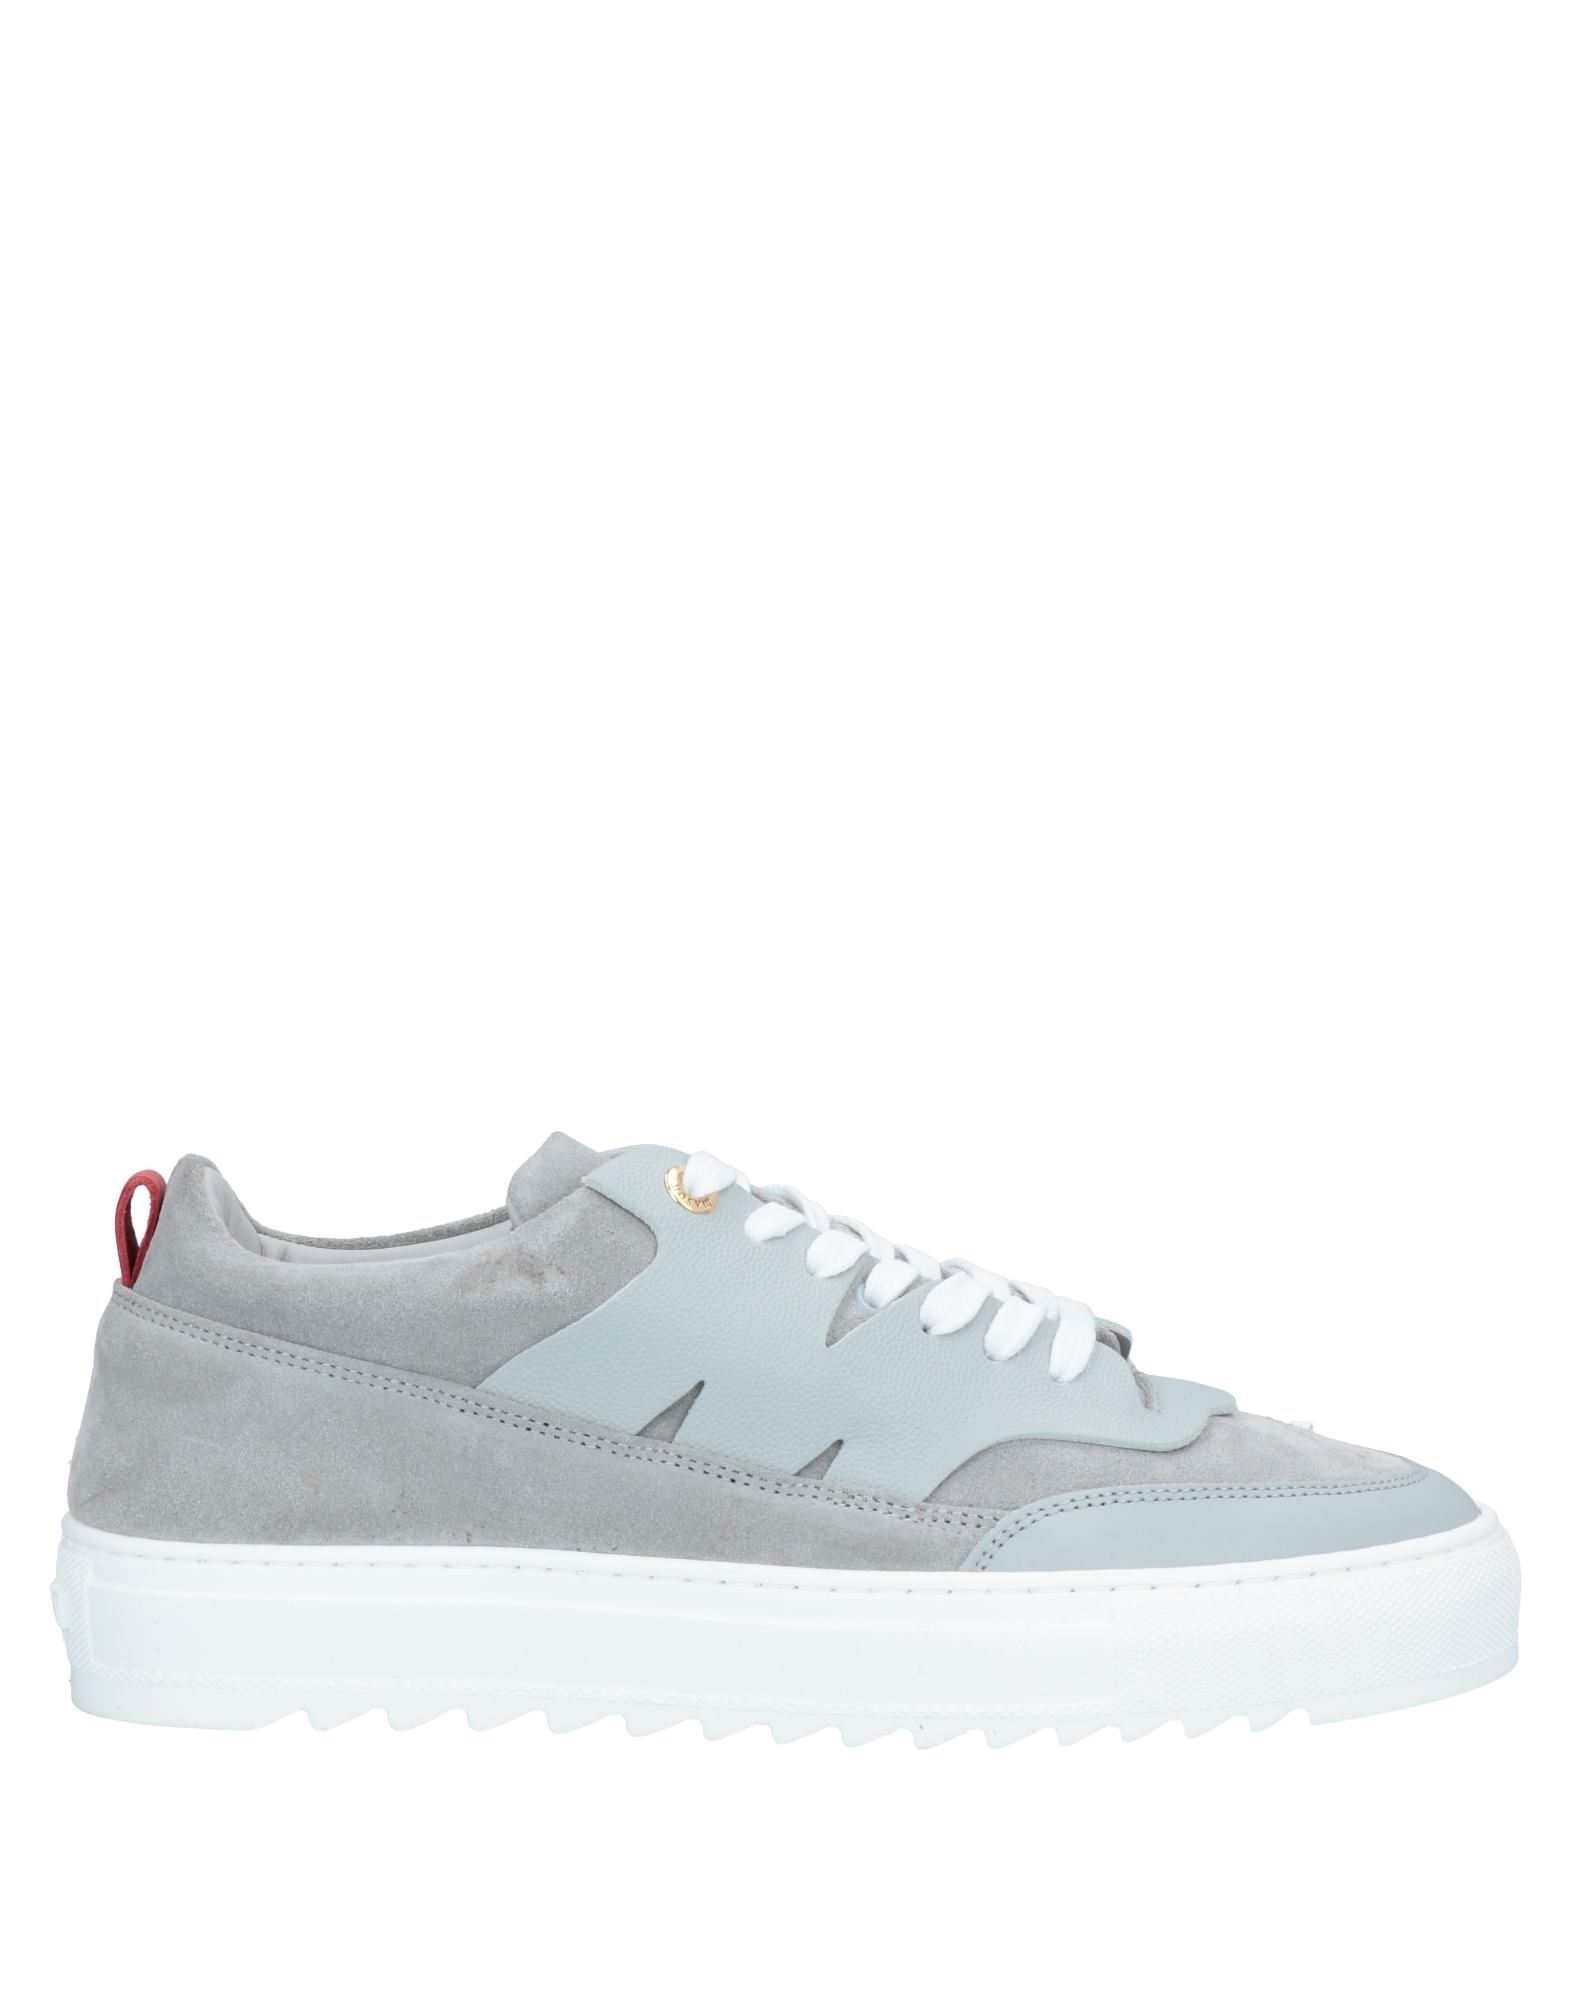 Mason Garments Sneakers In Grey